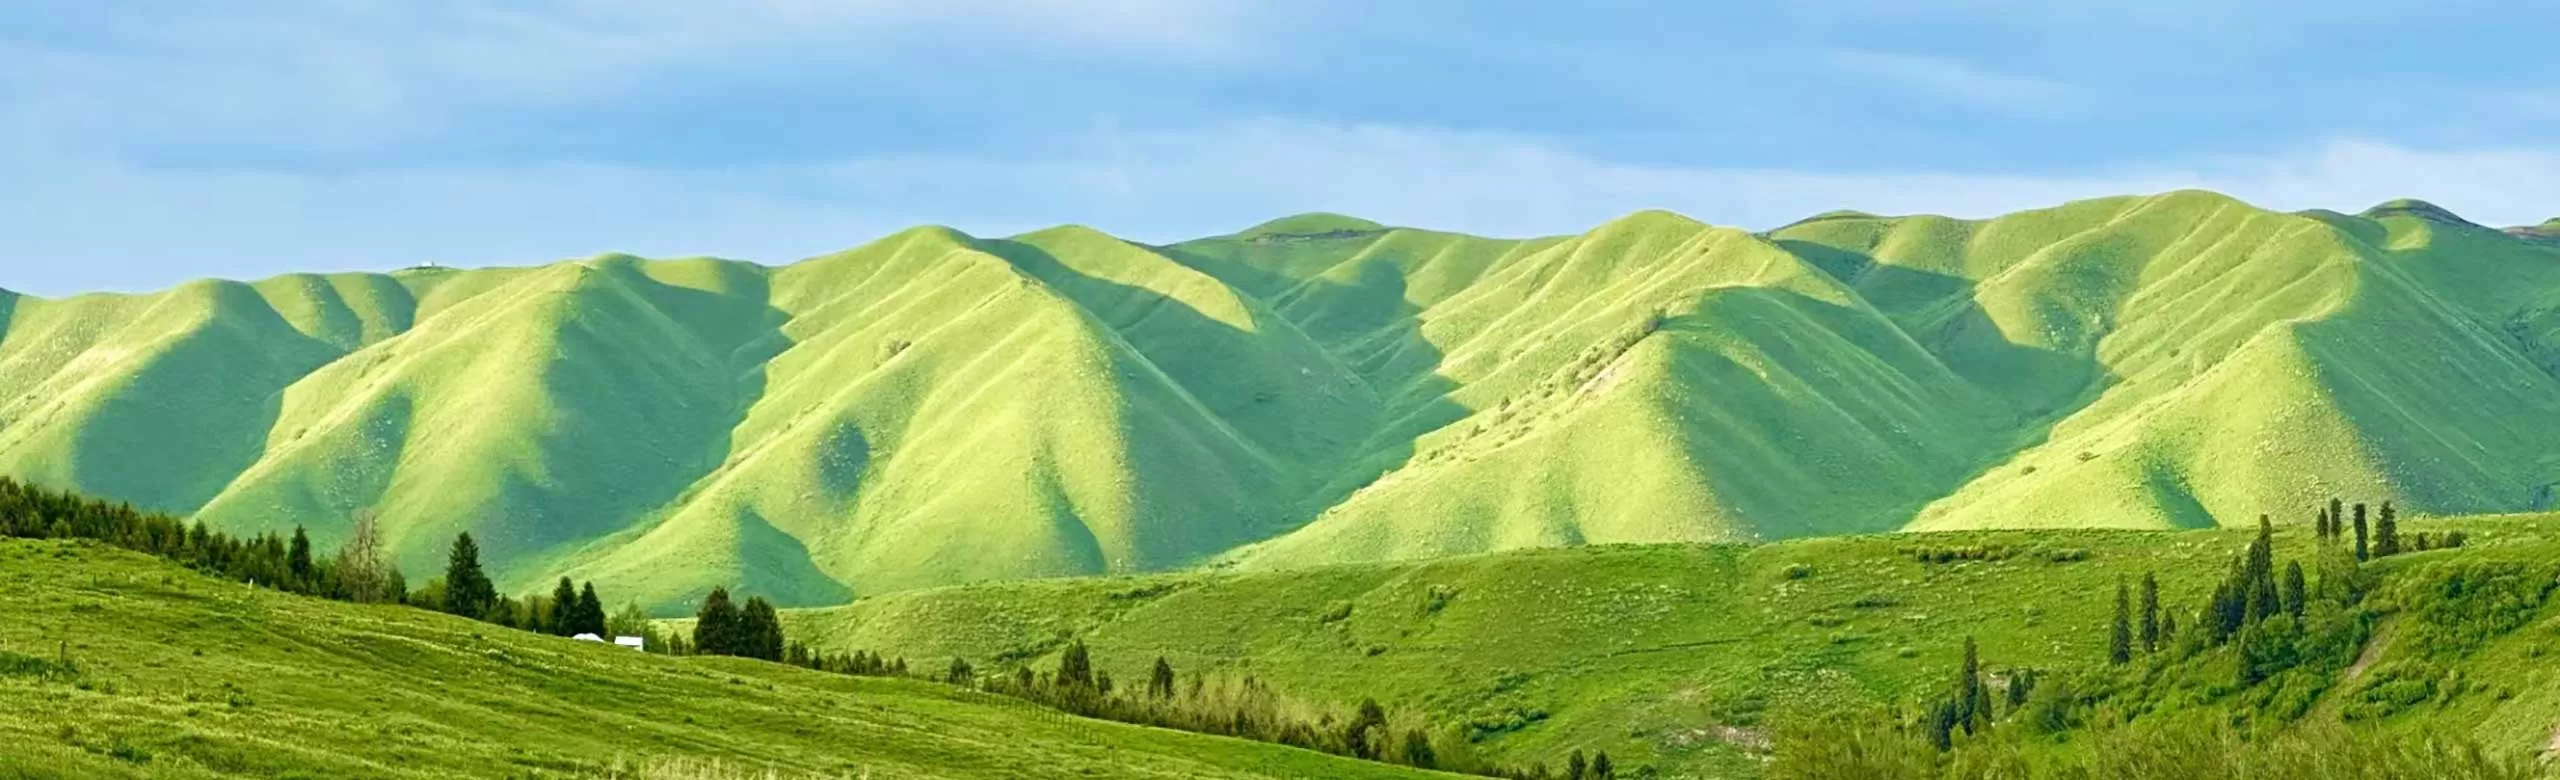 Xinjiang Grassland and Desert Tour